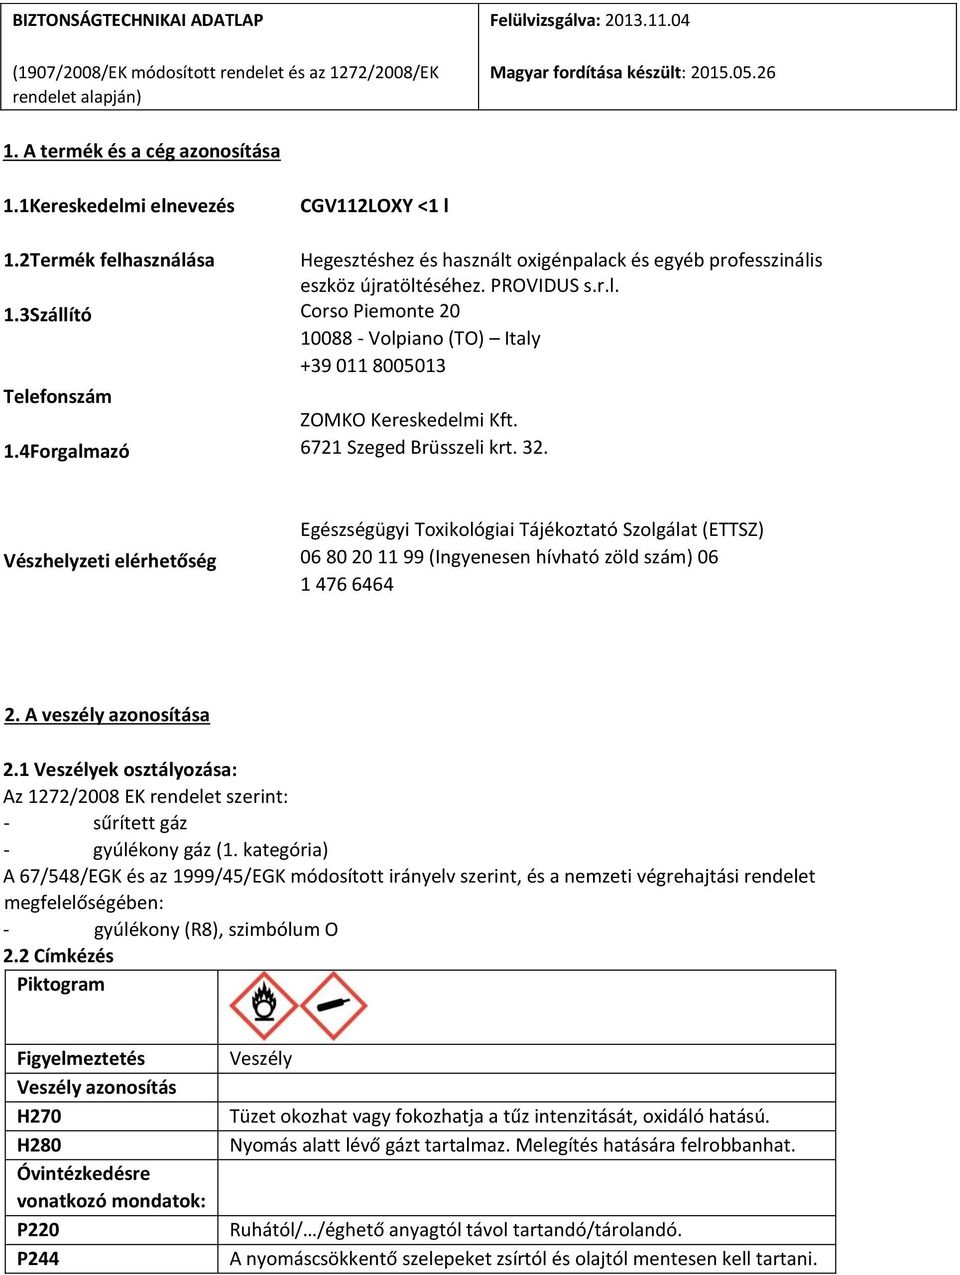 6721 Szeged Brüsszeli krt. 32. Vészhelyzeti elérhetőség Egészségügyi Toxikológiai Tájékoztató Szolgálat (ETTSZ) 06 80 20 11 99 (Ingyenesen hívható zöld szám) 06 1 476 6464 2. A veszély azonosítása 2.